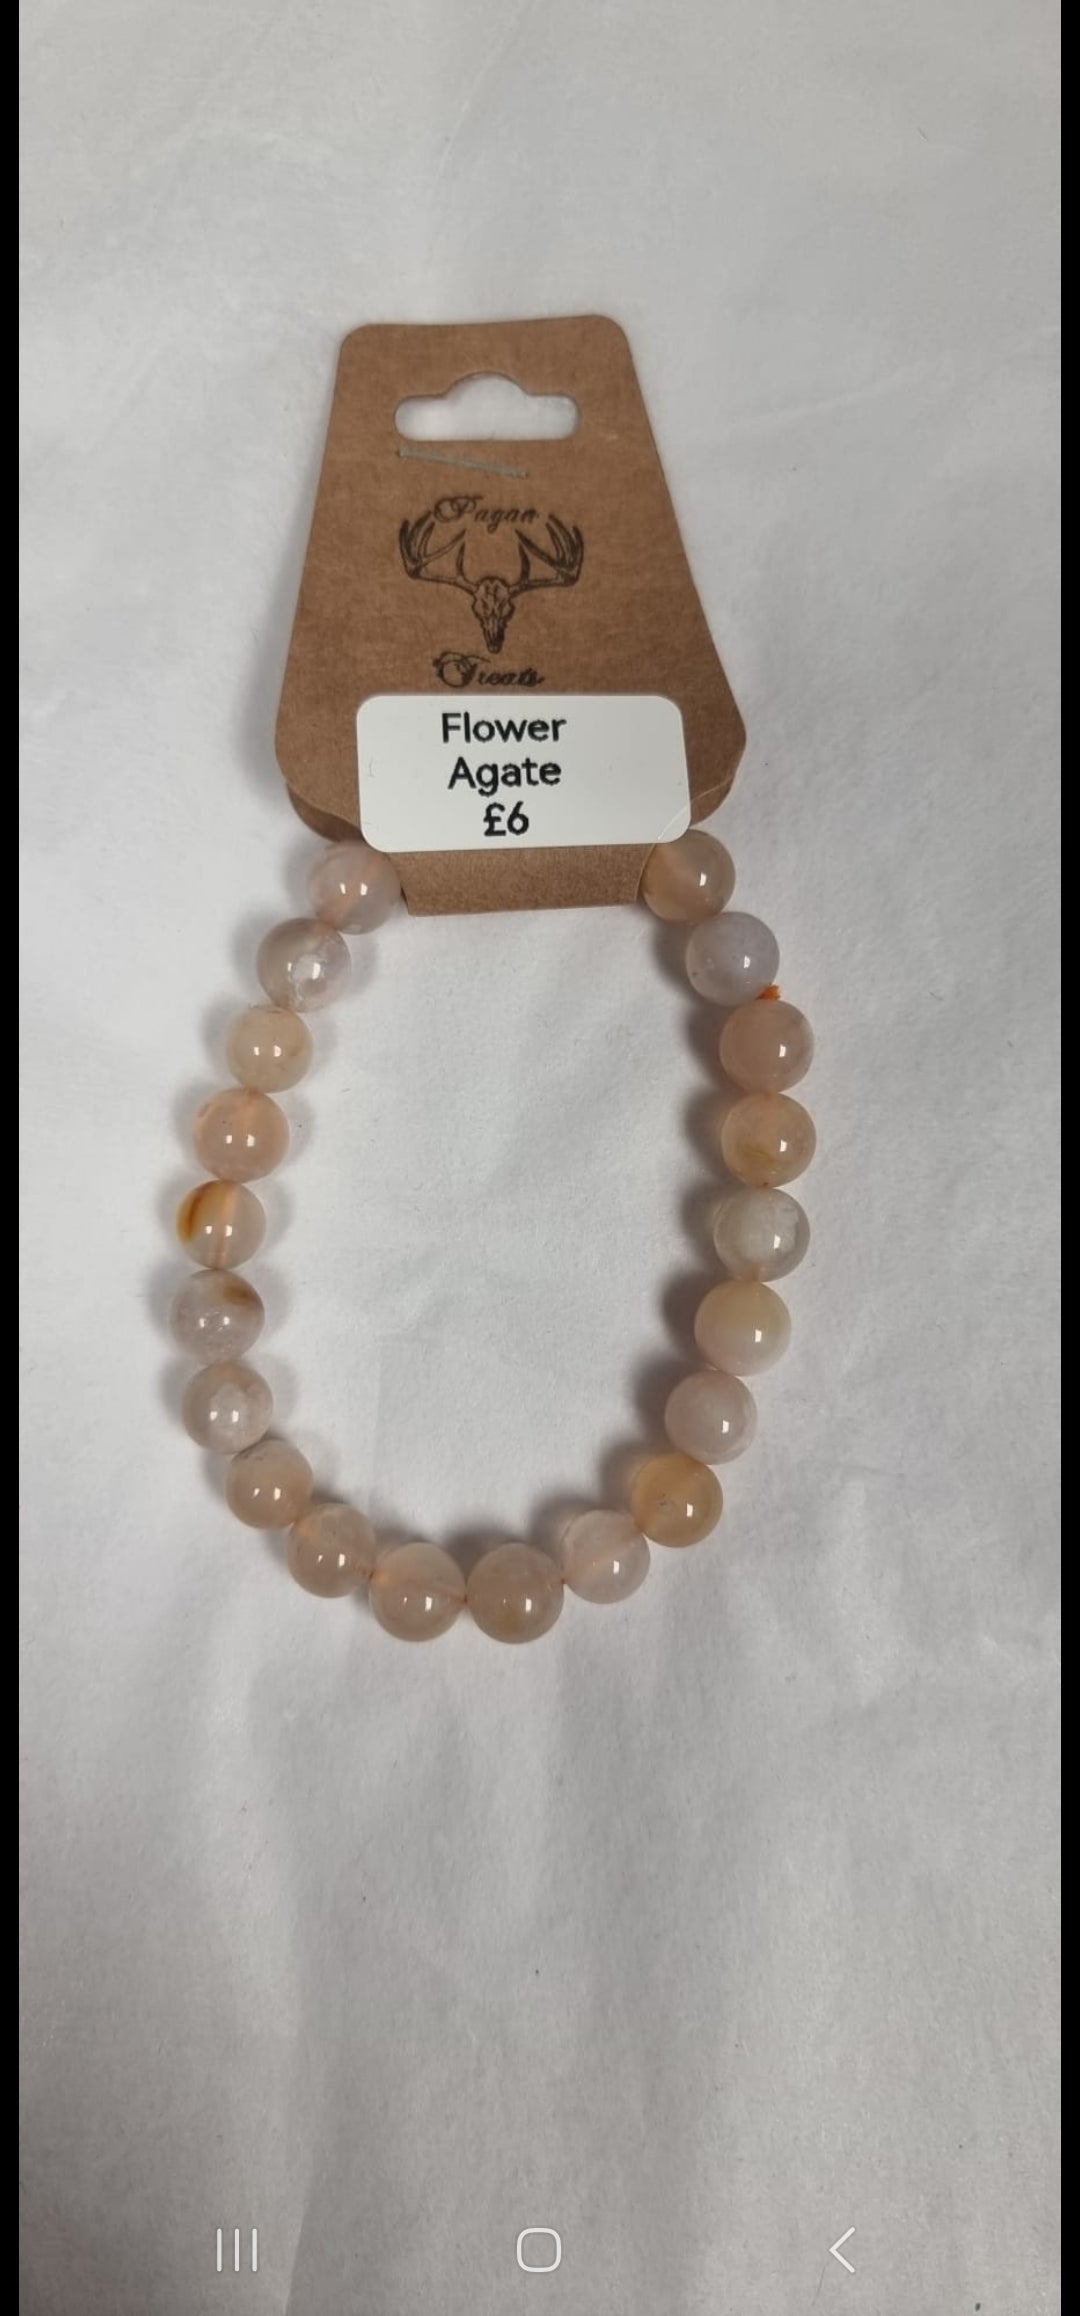 Flower Agate bead bracelet